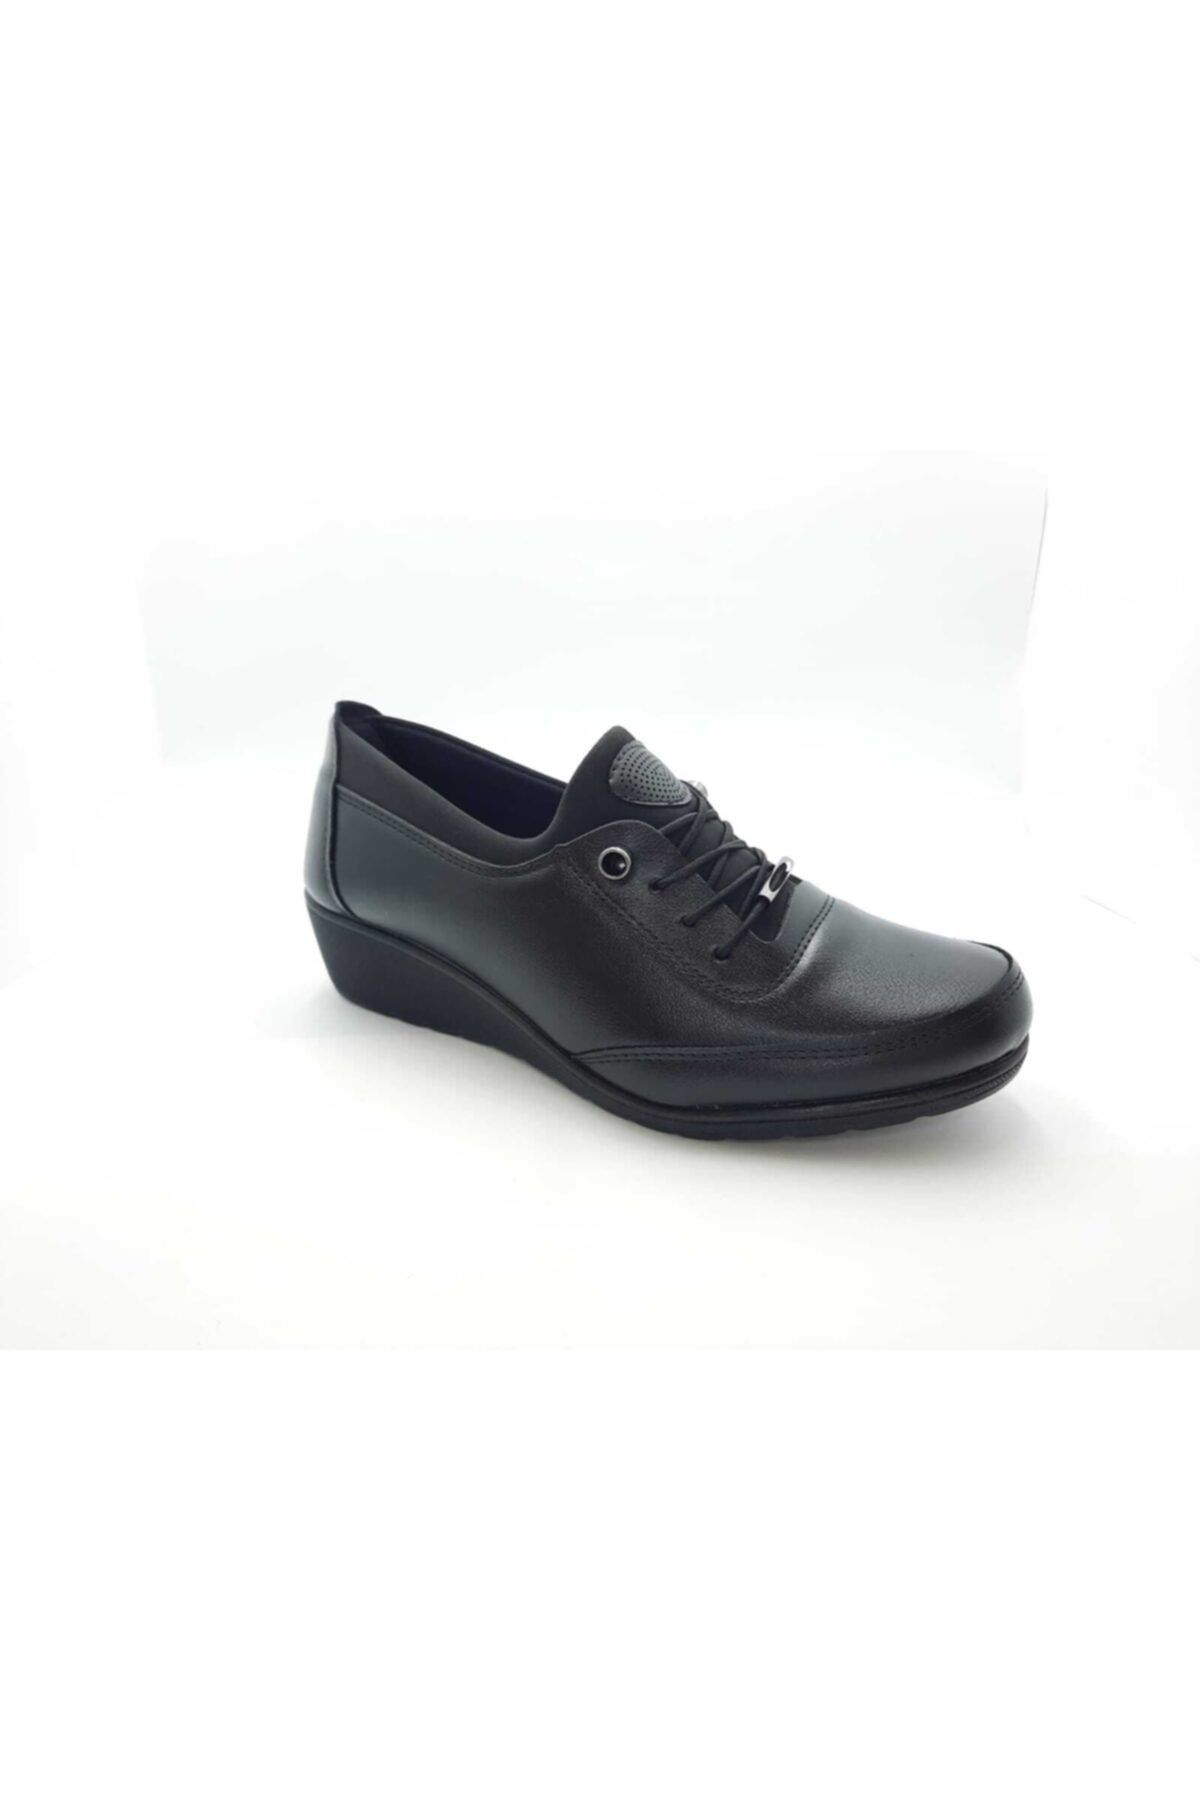 Huzur Shoes Kadın Siyah Ortopedik Lastikli Kışlık Anne Ayakkabısı